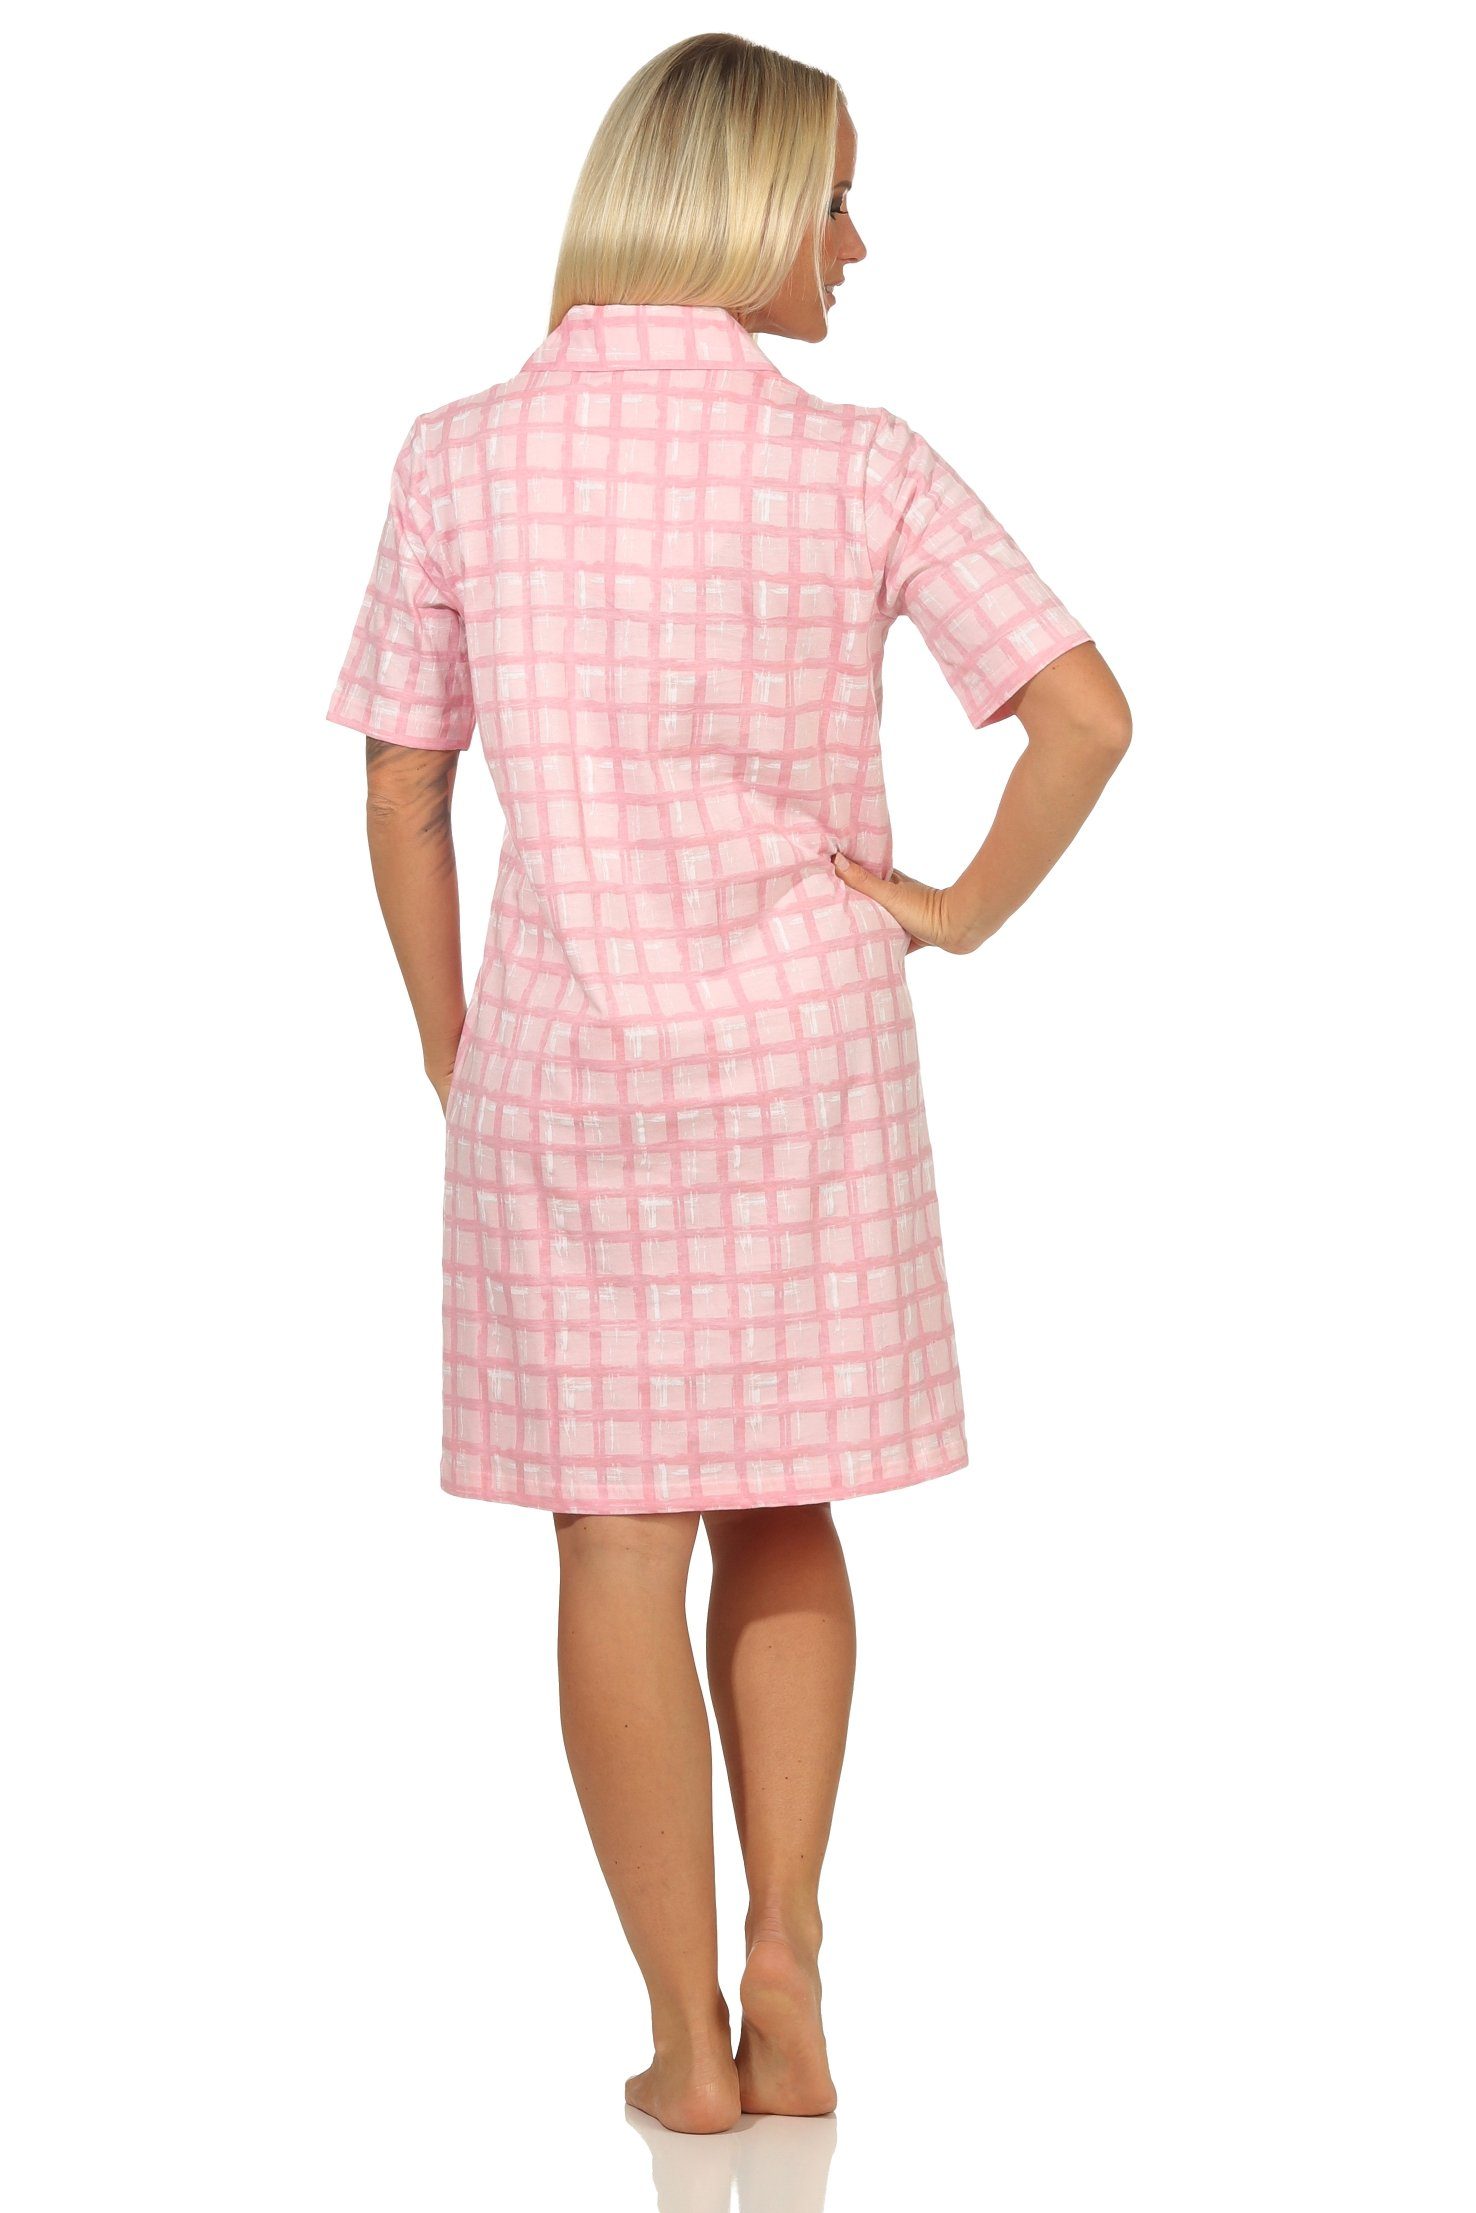 rosa zum kurzarm komplett Damen in durchknöpfen - Normann Nachthemd Übergröße Nachthemd auch